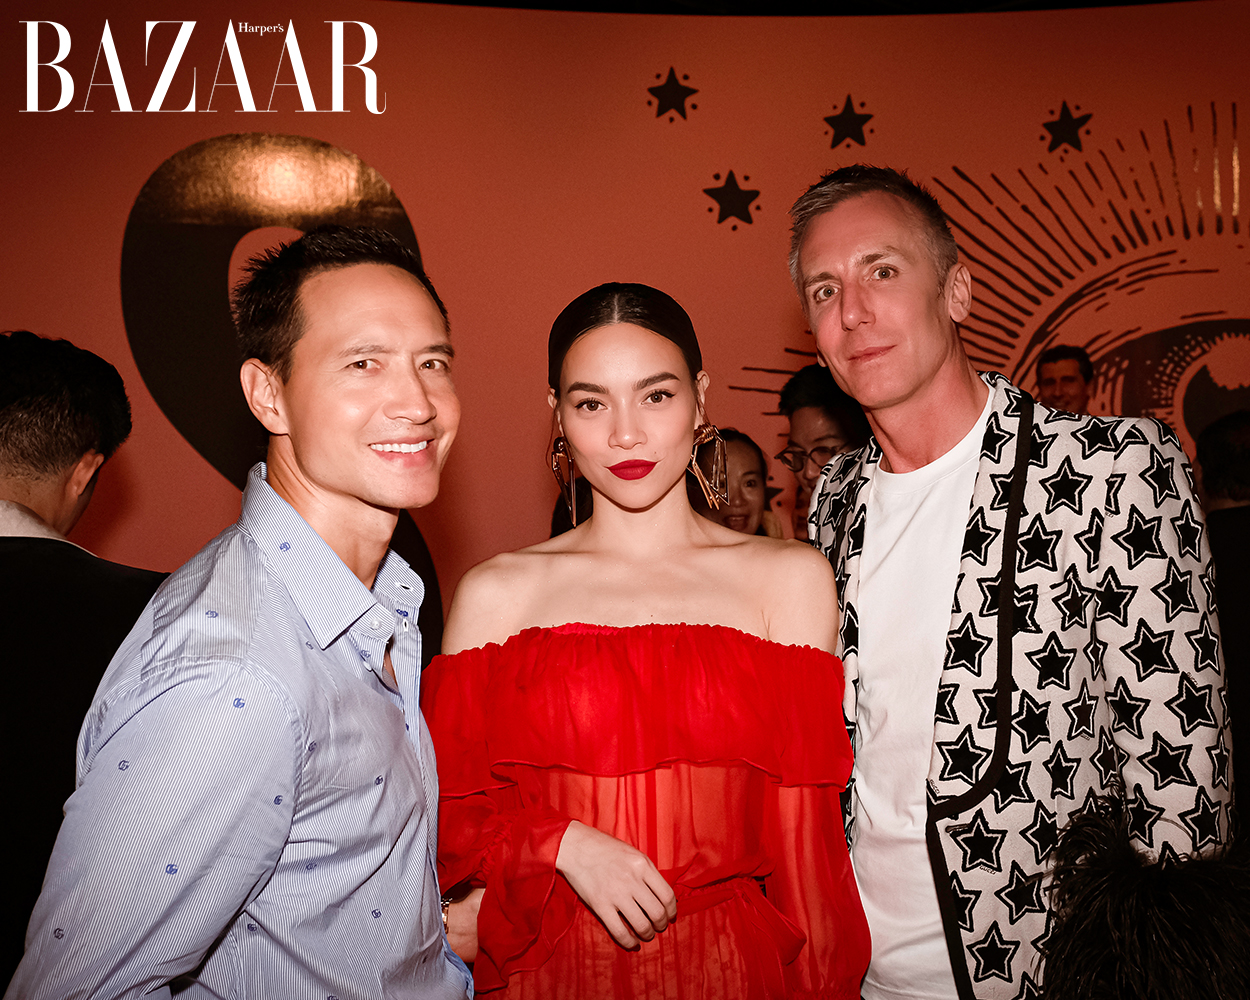  Harper's Bazaar_Hồ Ngọc Hà và Kim Lý dự Gucci_03